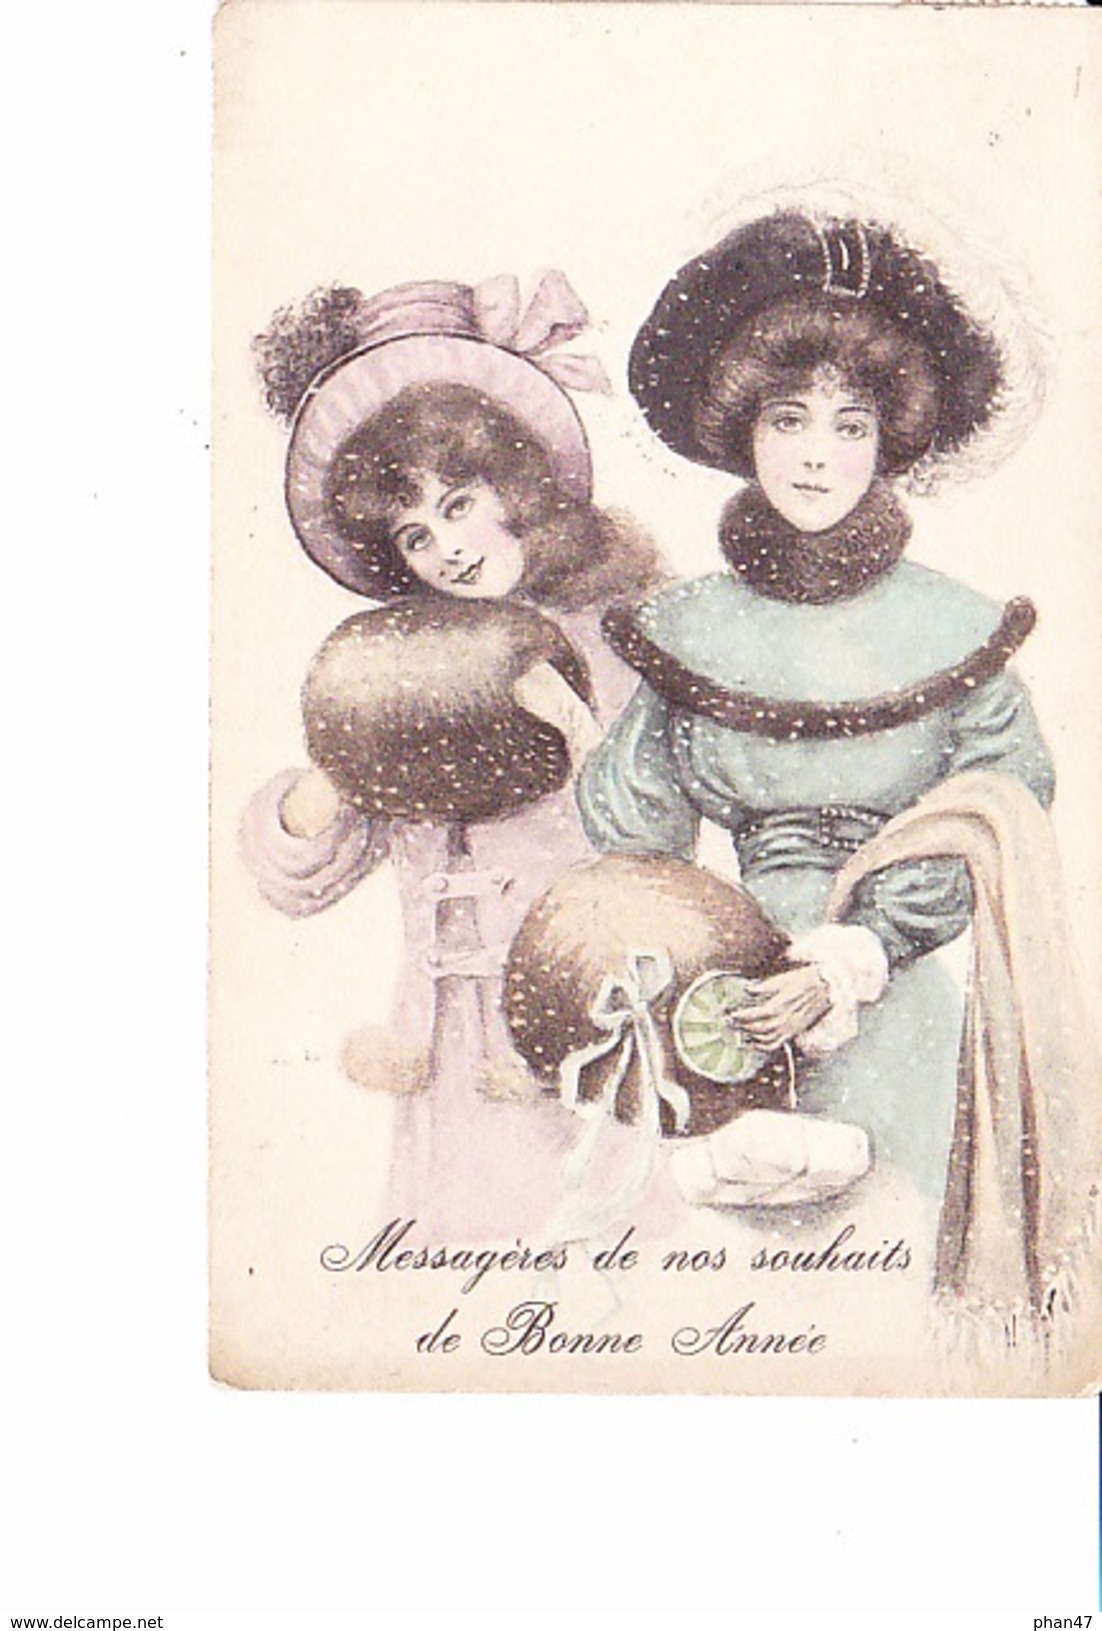 BONNE ANNEE, Message De Nos Souhaits, 2 Jeunes Filles Avec Manchon Et Chapeau, Ed. G.E. (hirondelle) 1907 - Nouvel An